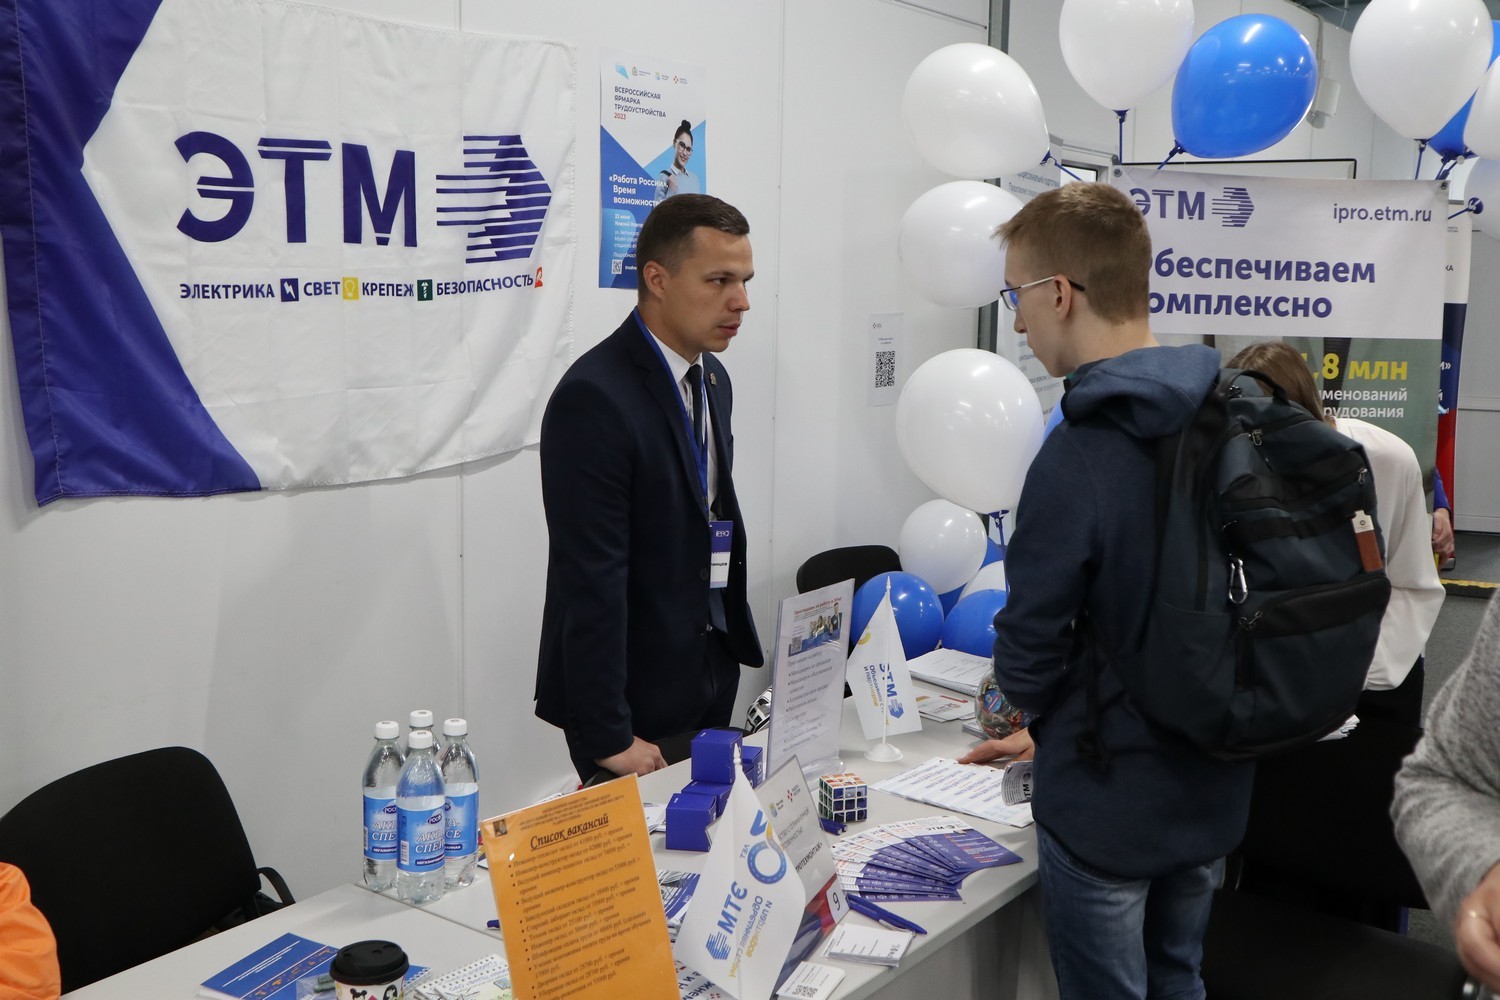 Более 150 работодателей представили вакансии на Всероссийской ярмарке трудоустройства в Нижегородской области